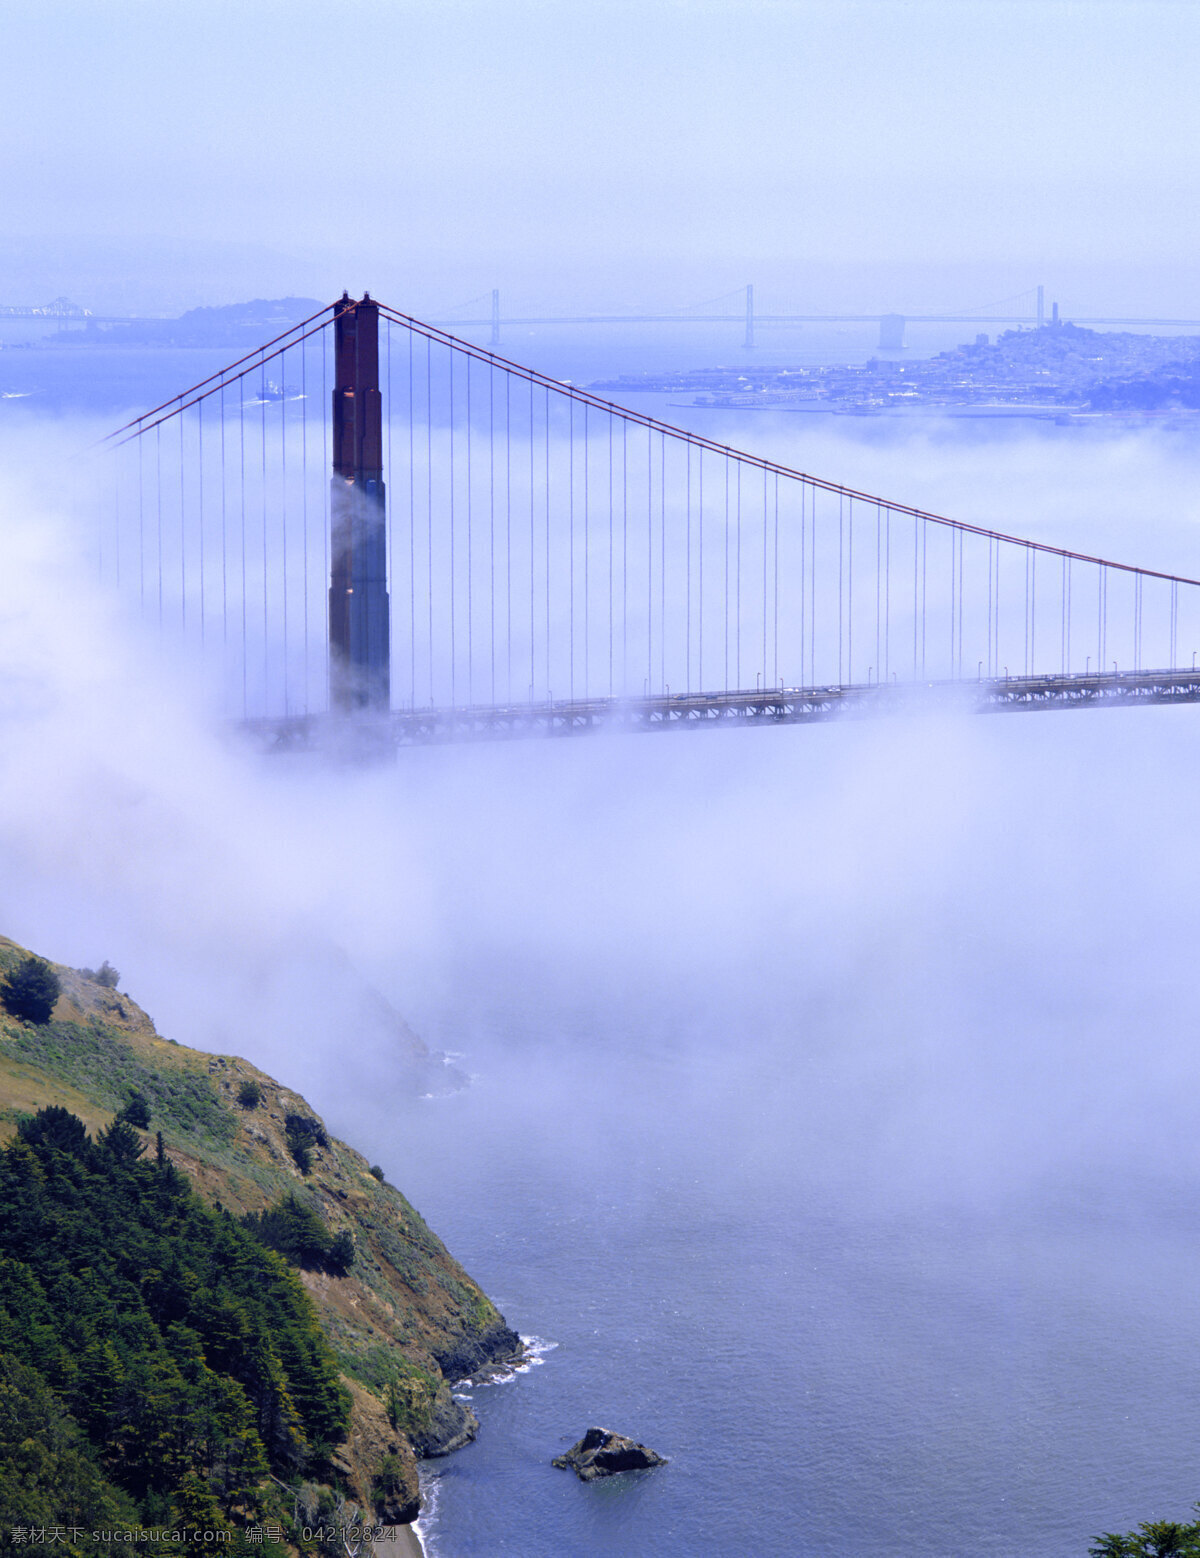 旧金山 大桥 旧金山大桥 金山大桥 桥 美国景点 美国建筑桥梁 美国旅游 美国风景 国家地理 美国 国外旅游 旅游摄影 城市风光 环境家居 蓝色